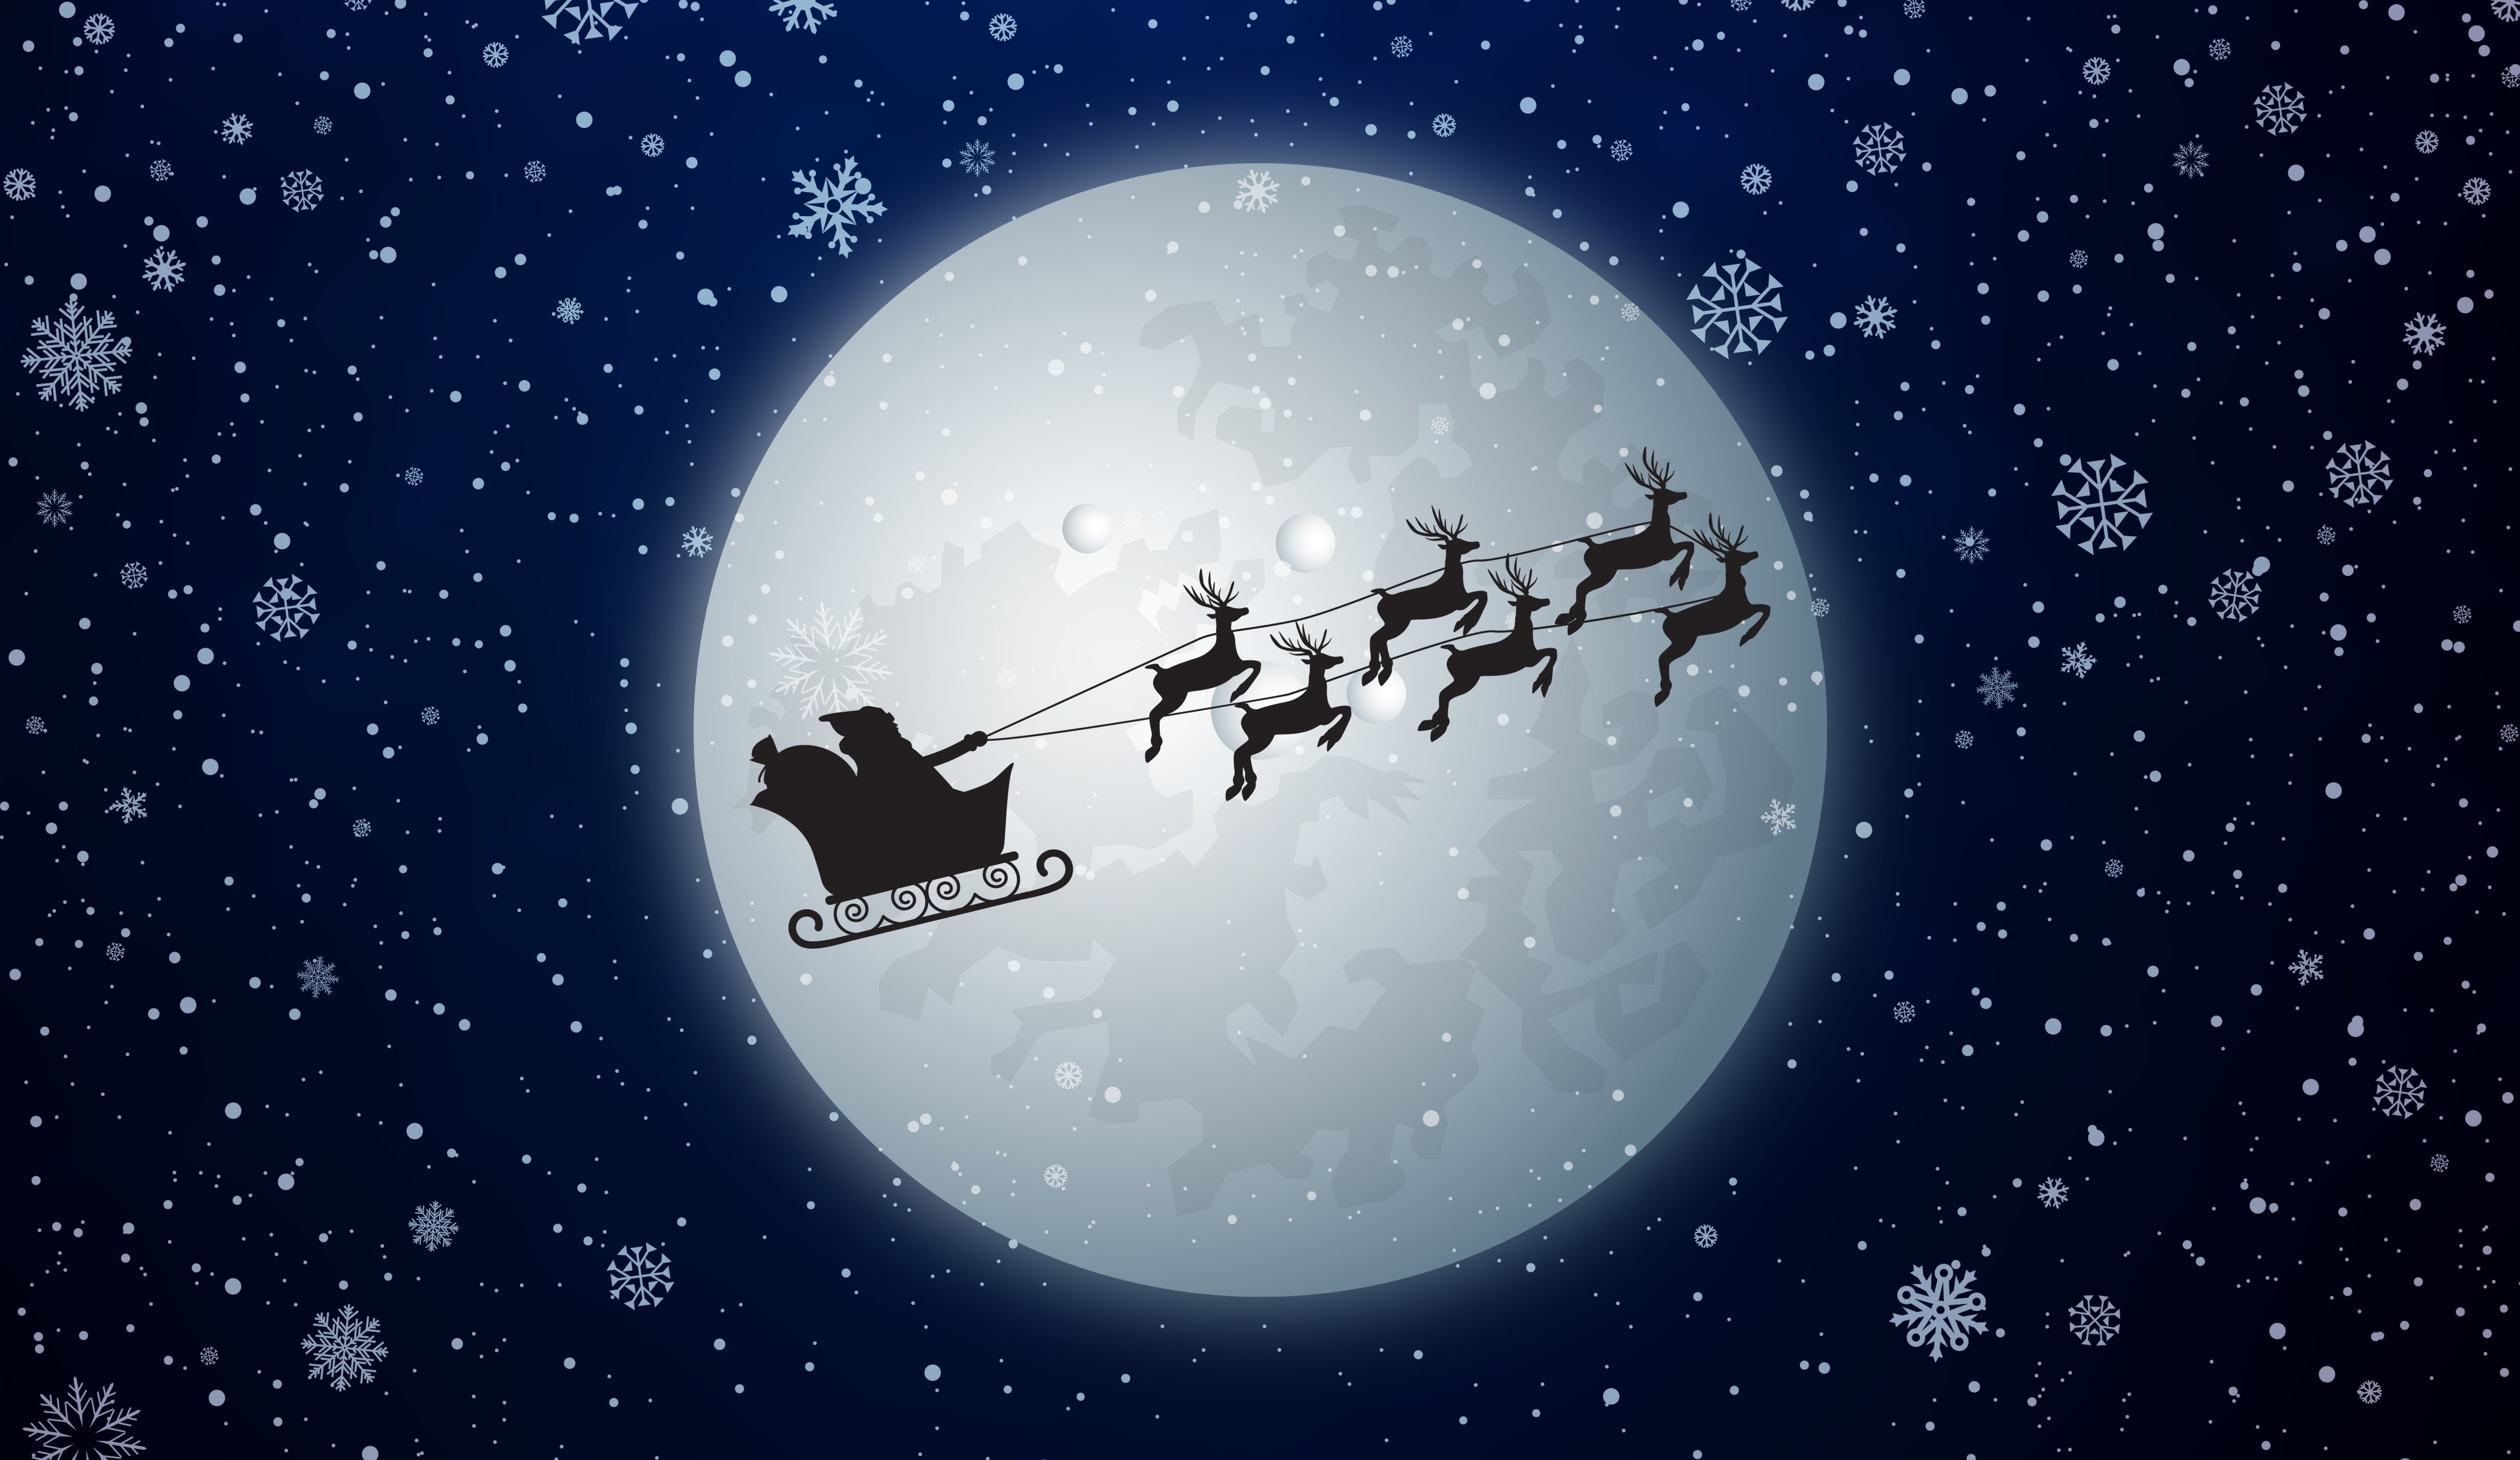 Snowfall, Reindeer Chariot, Moon, Santa Claus, 4K